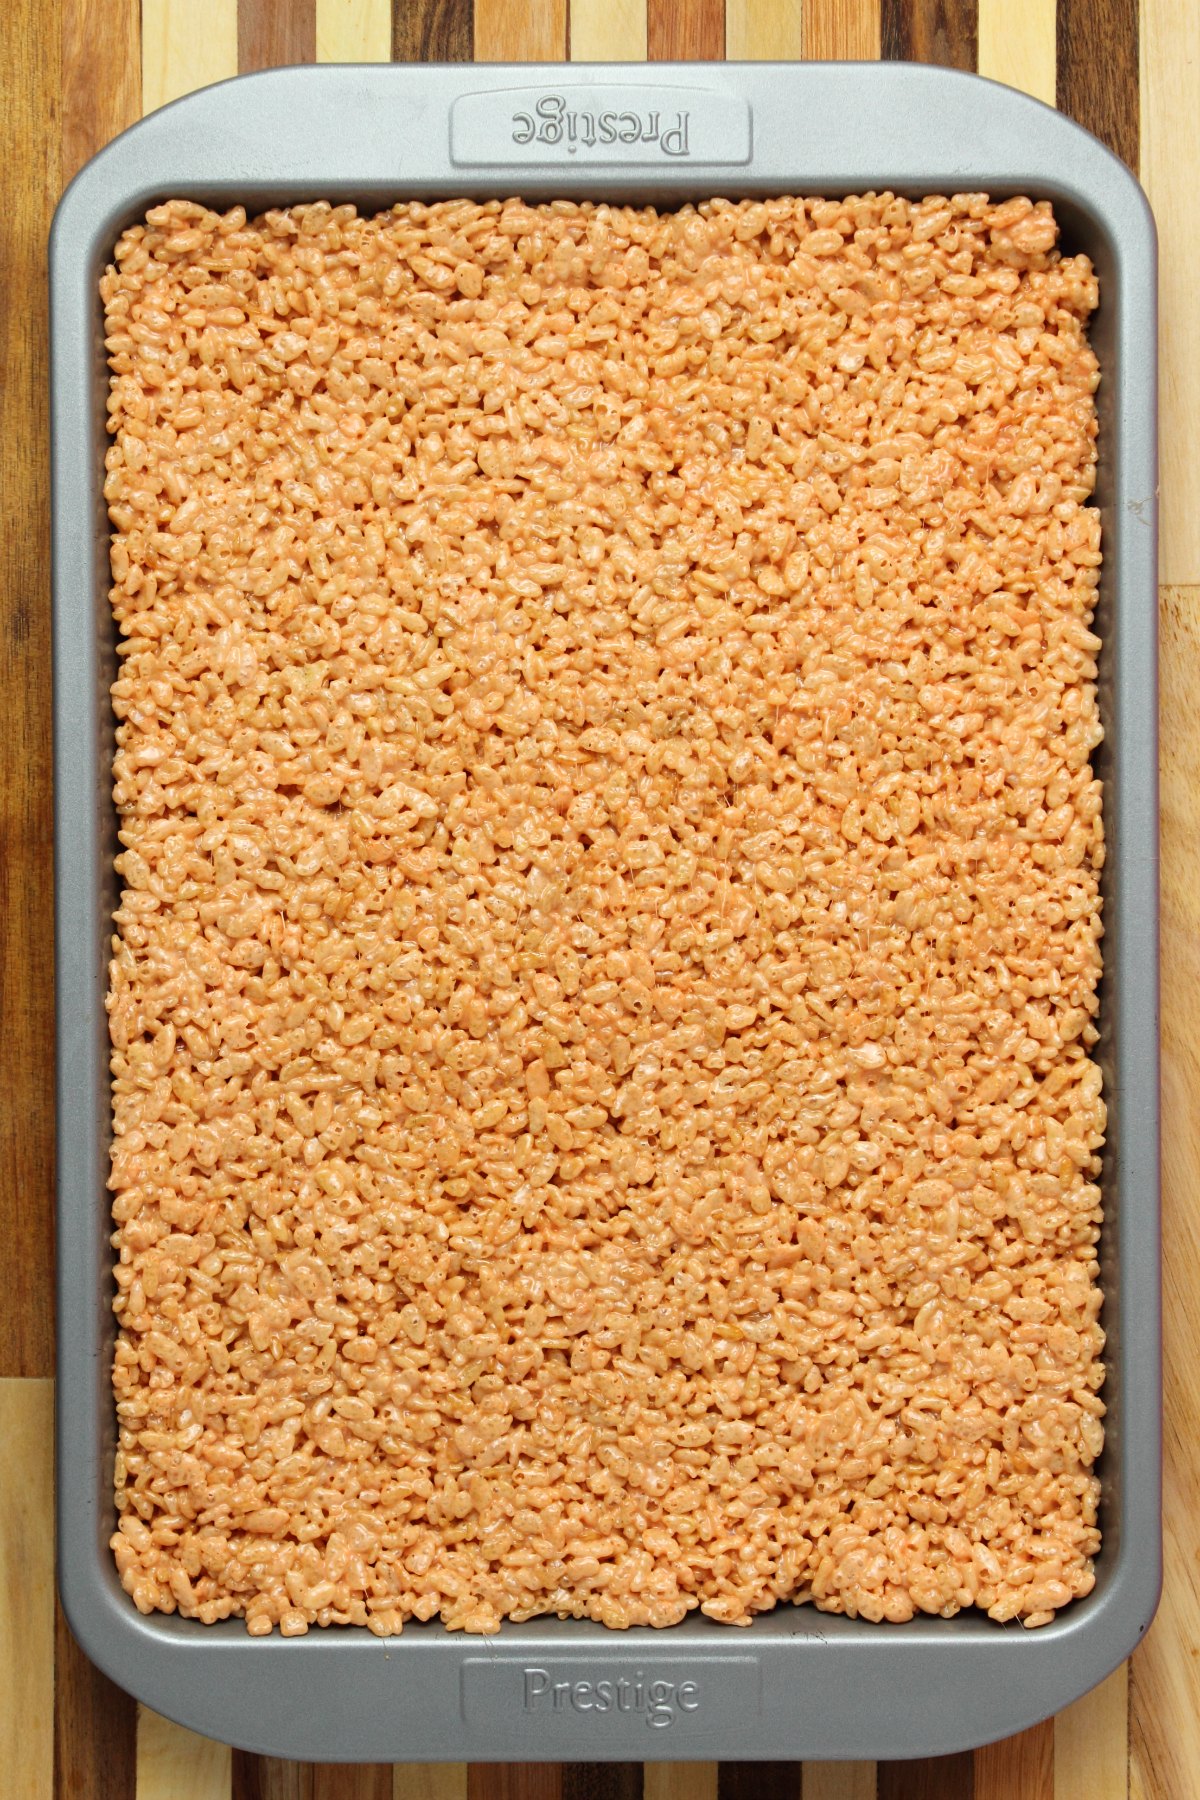 Rice krispie treats in a 9x13 baking sheet.